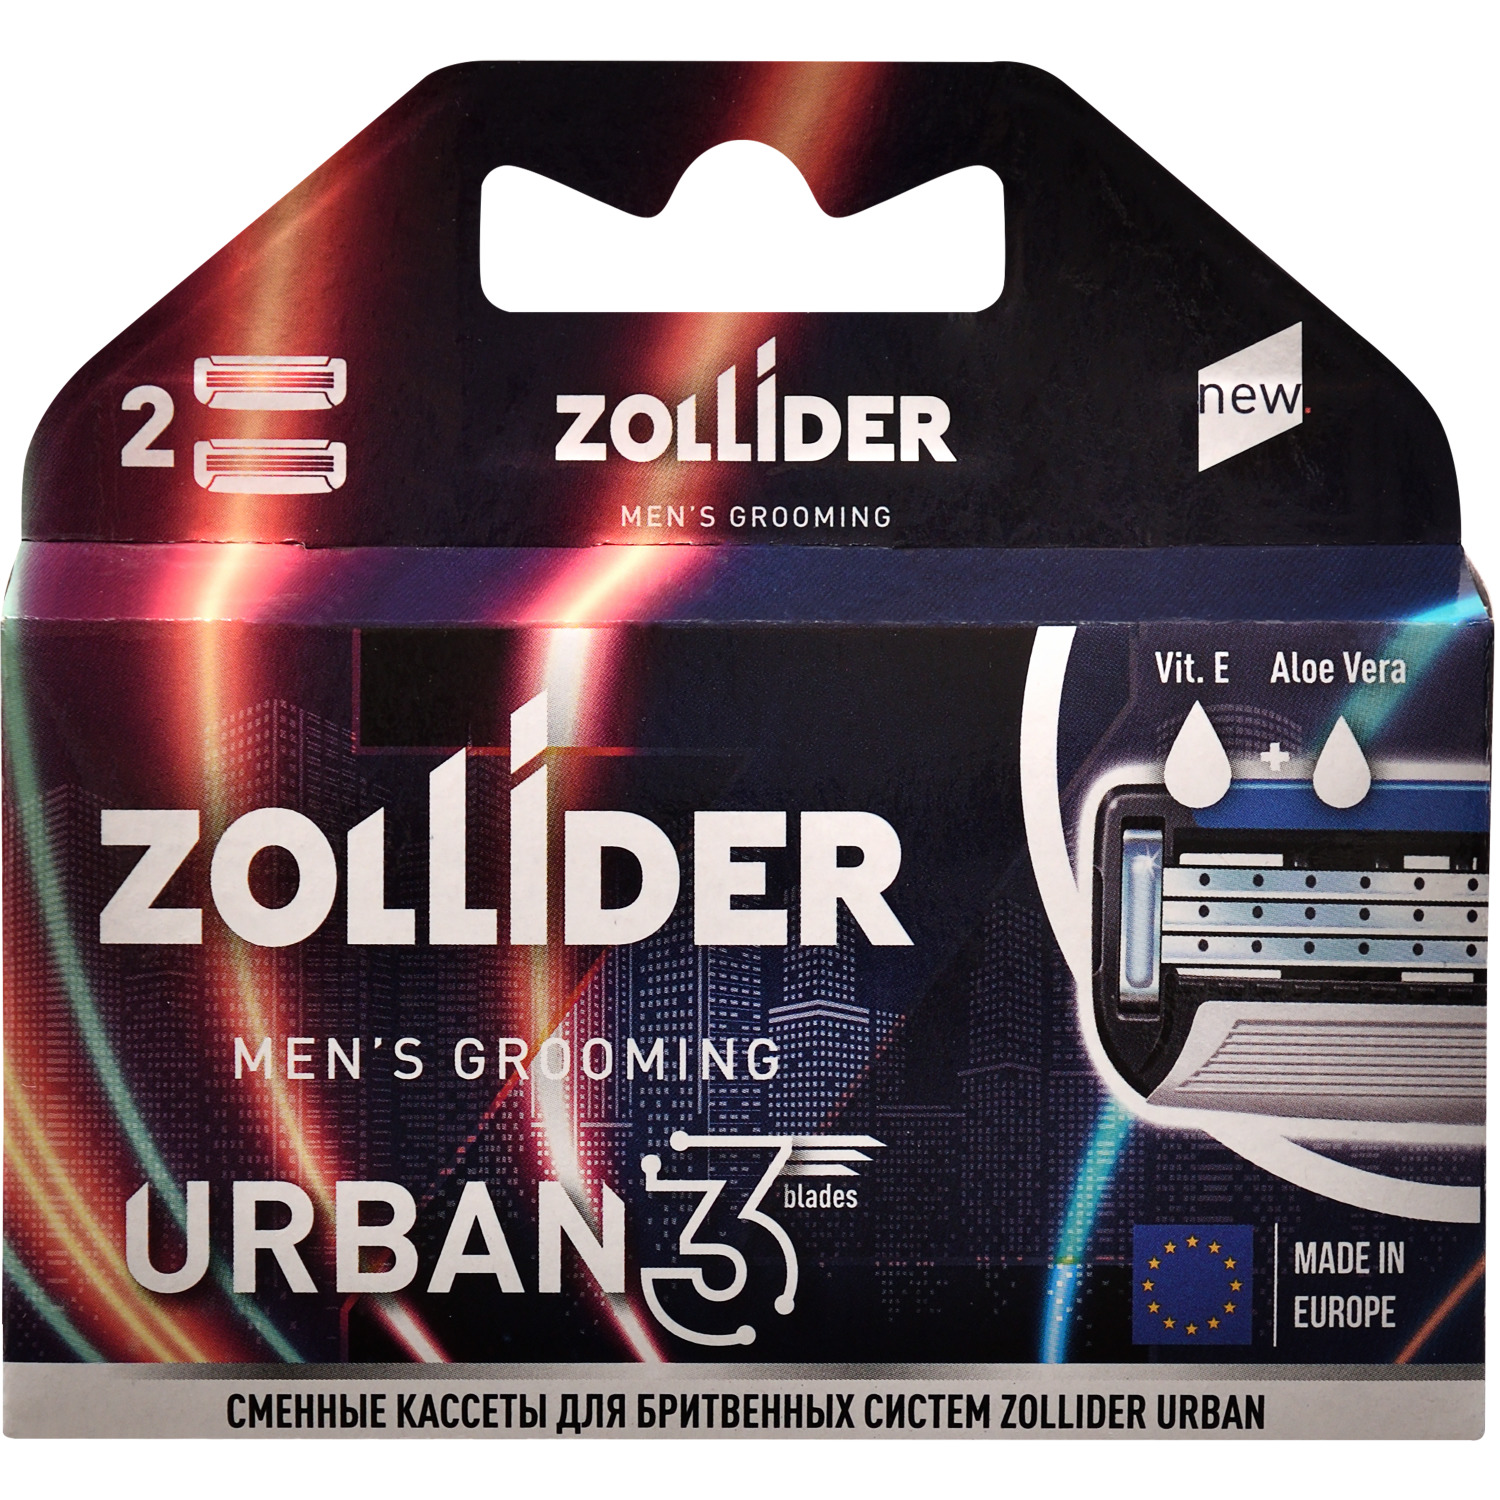 Сменные кассеты Zollider URBAN 3 blades 3 лезвия 2 шт сменные лезвия для скребков арт 0853 08533 08535 stayer